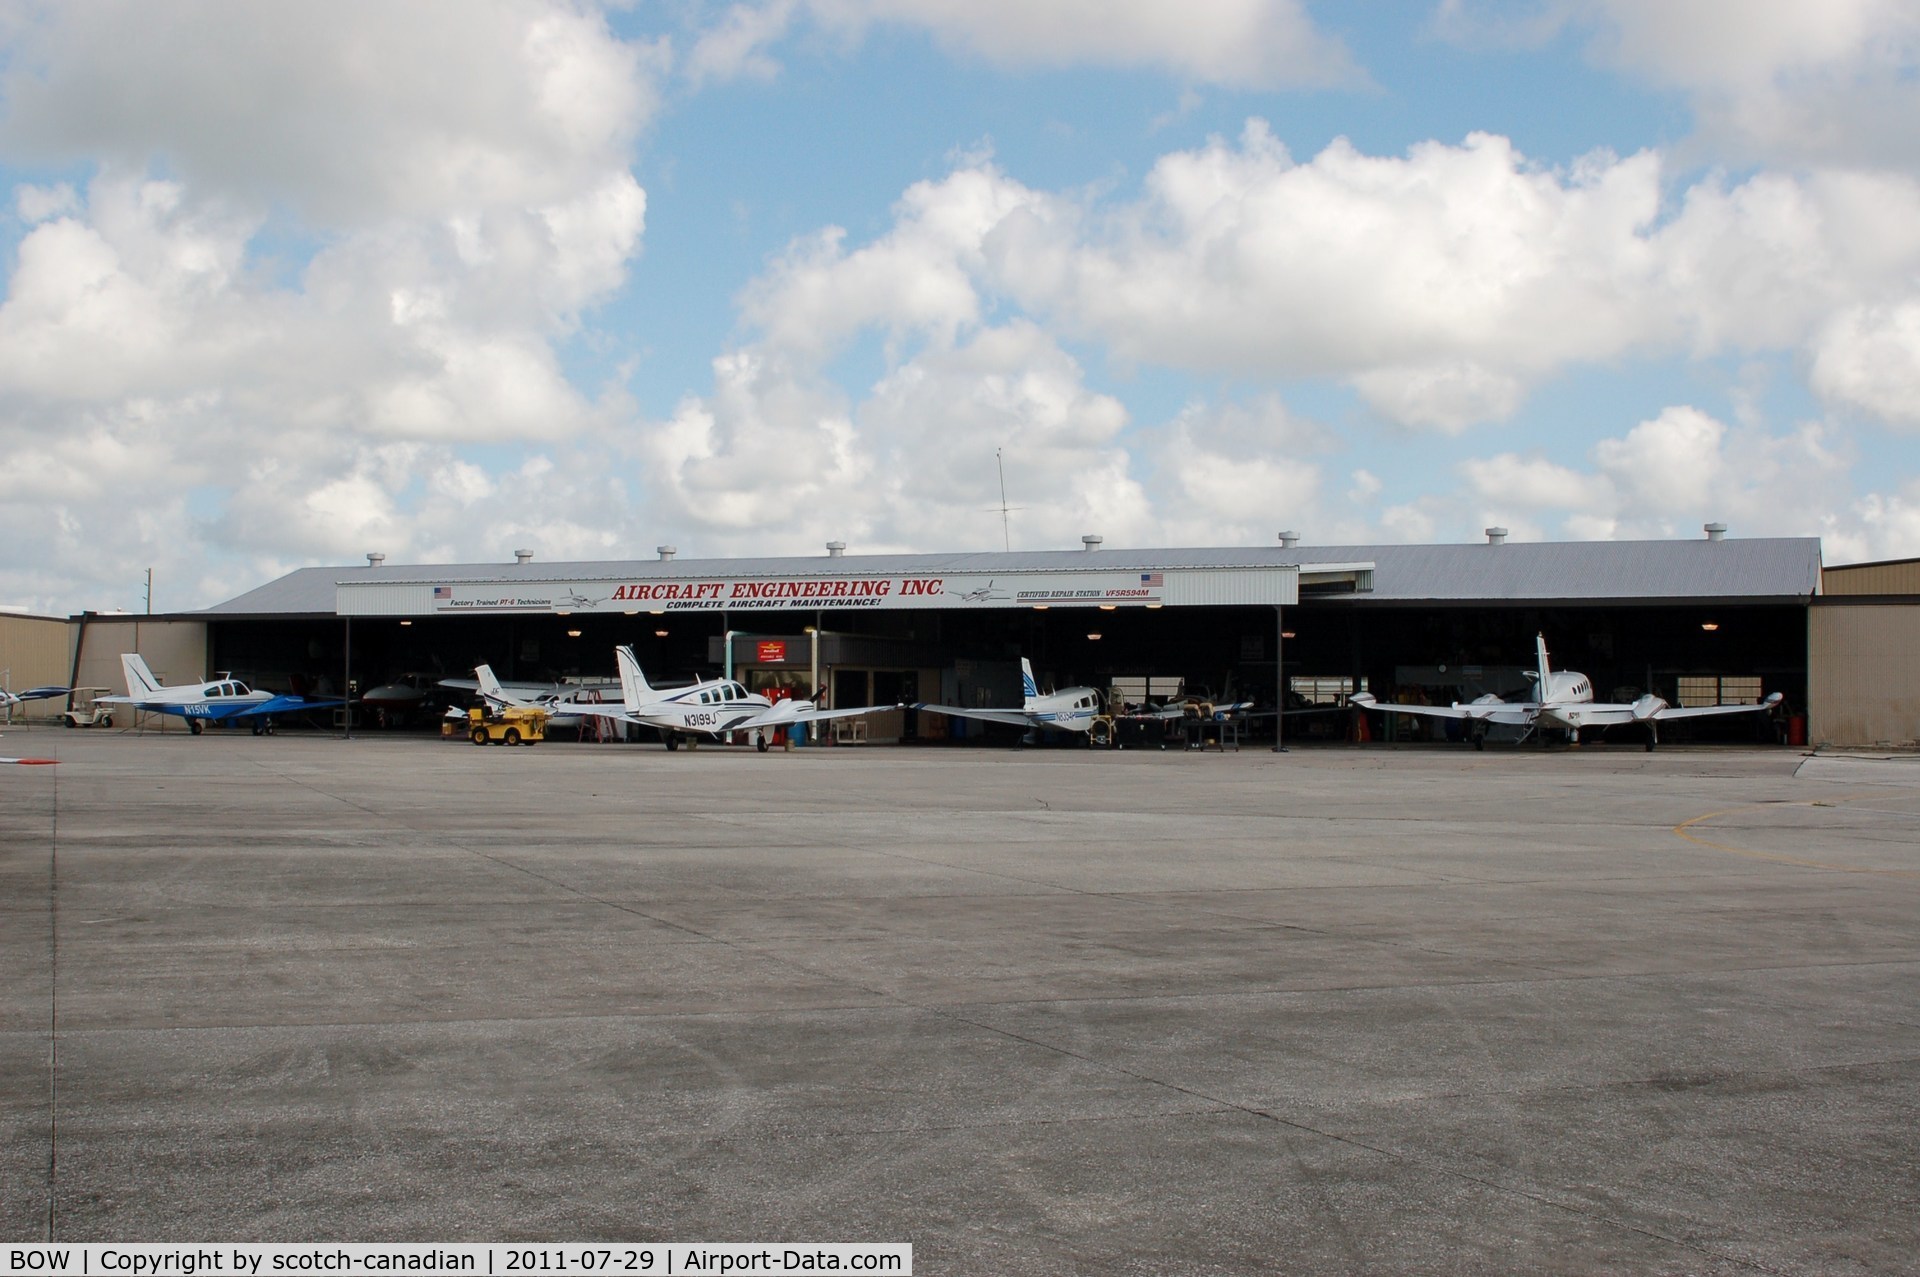 Bartow Municipal Airport (BOW) - Aircraft Engineering Inc. at Bartow Municipal Airport, Bartow, FL